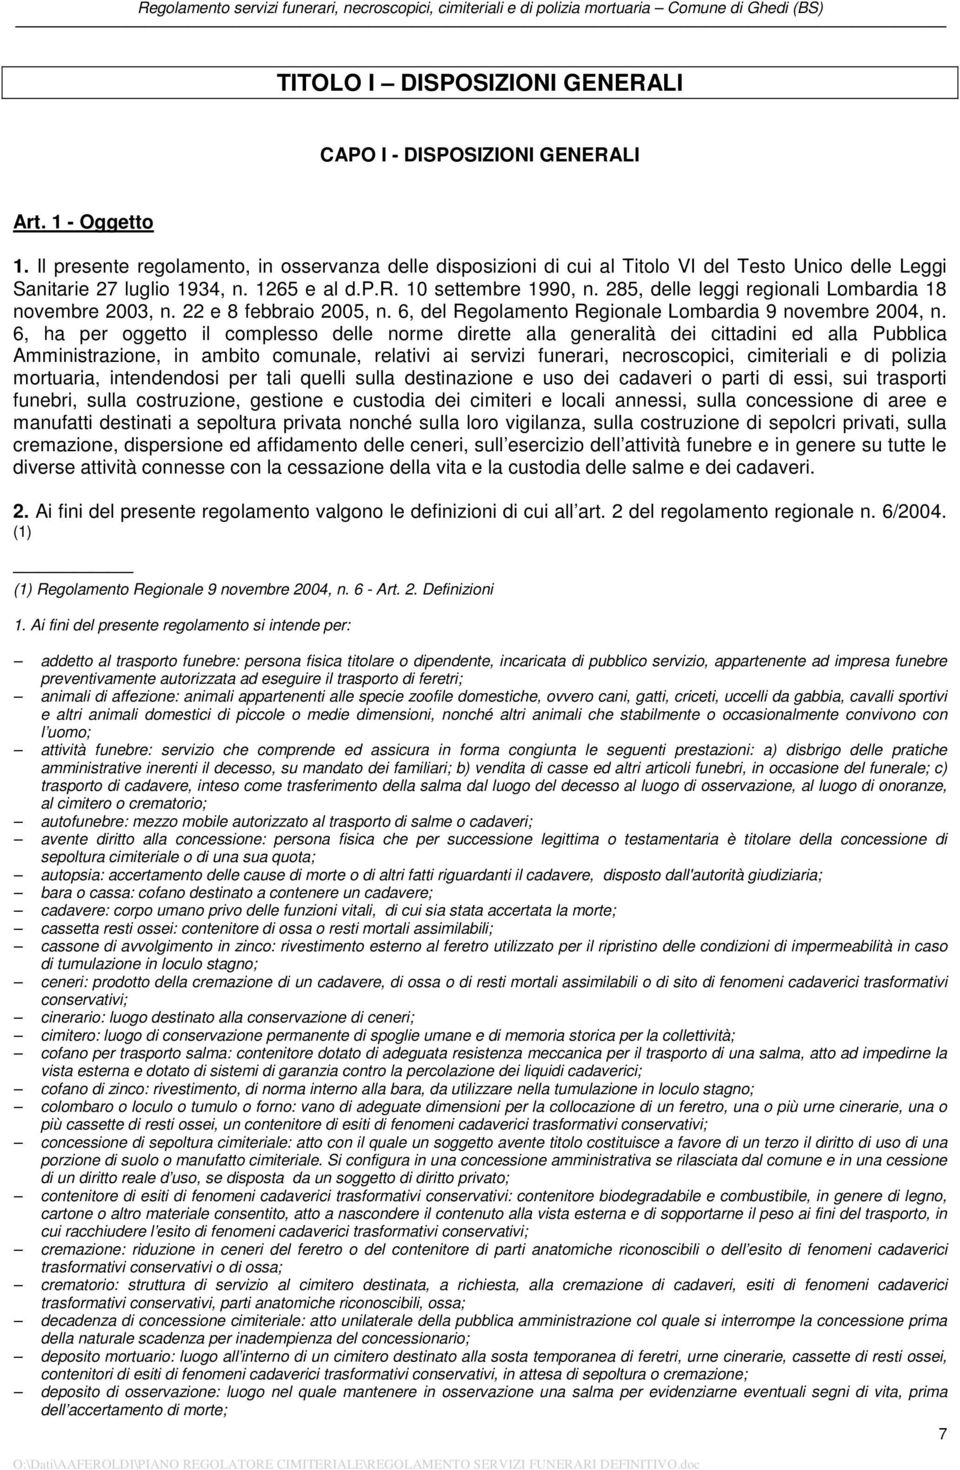 285, delle leggi regionali Lombardia 18 novembre 2003, n. 22 e 8 febbraio 2005, n. 6, del Regolamento Regionale Lombardia 9 novembre 2004, n.